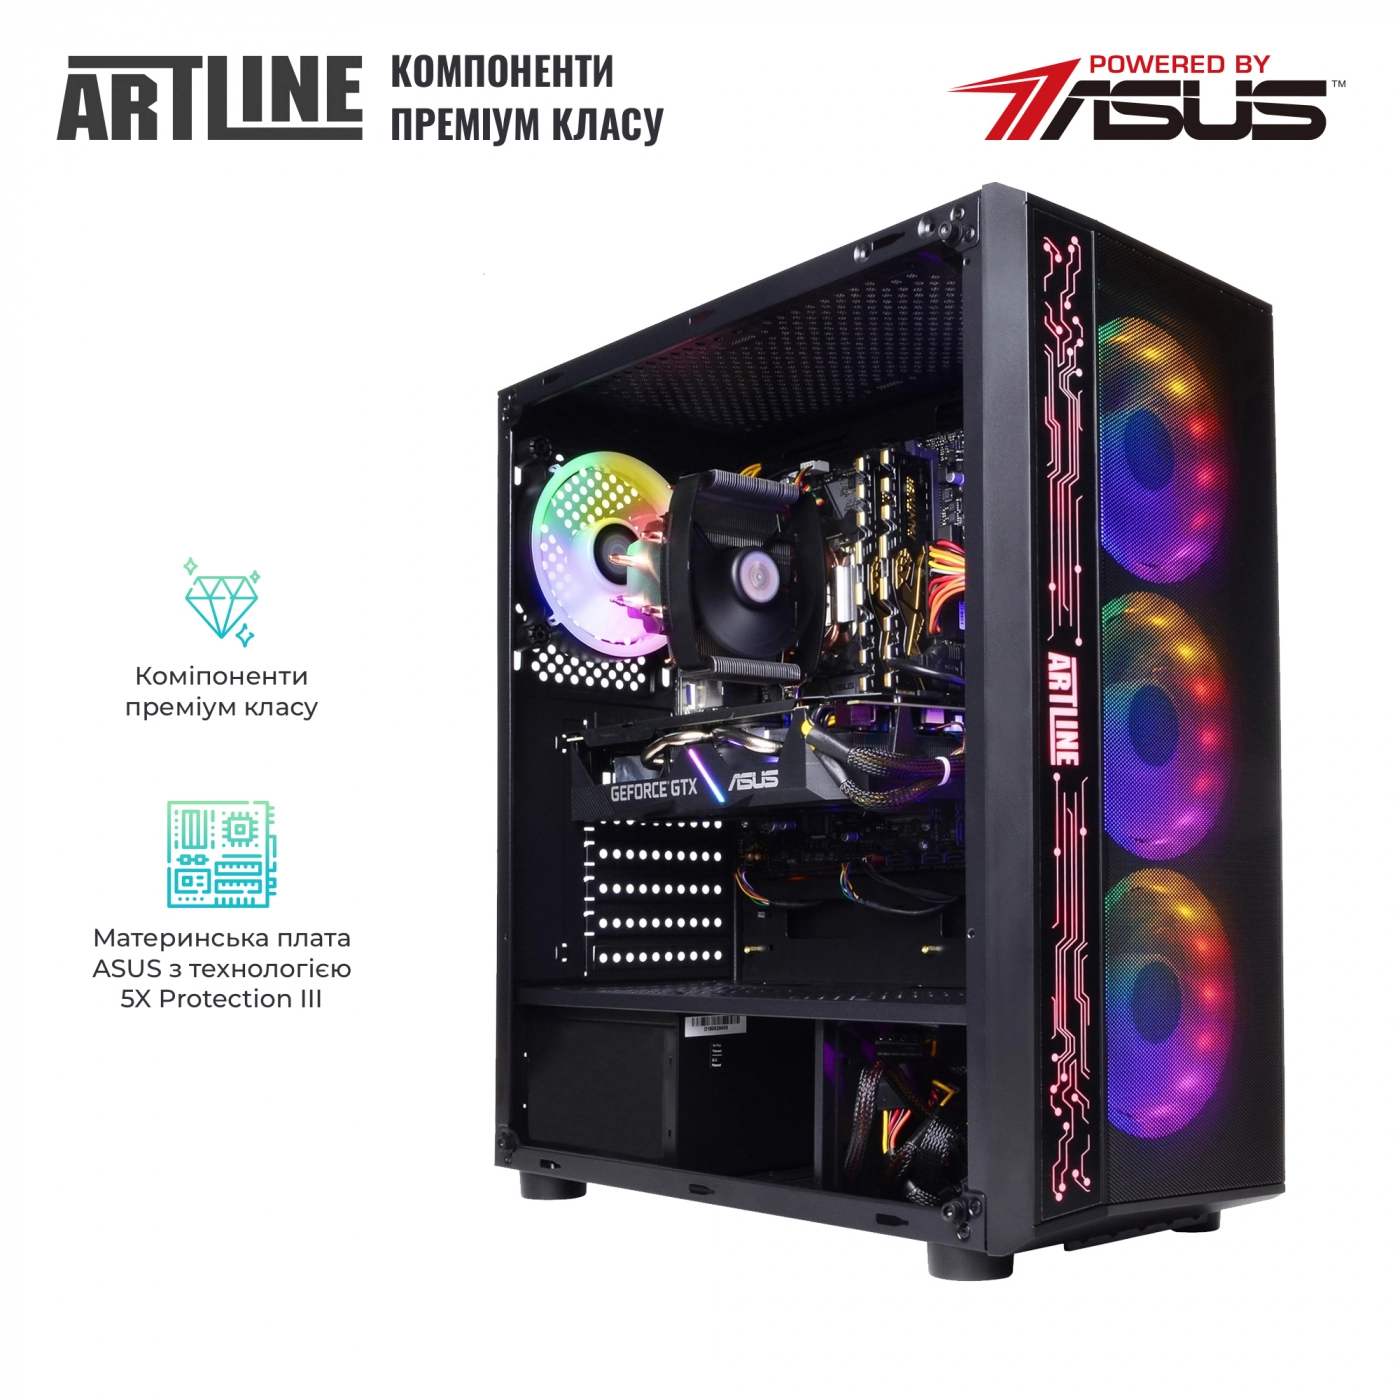 Купить Компьютер ARTLINE Gaming X48v15 - фото 2